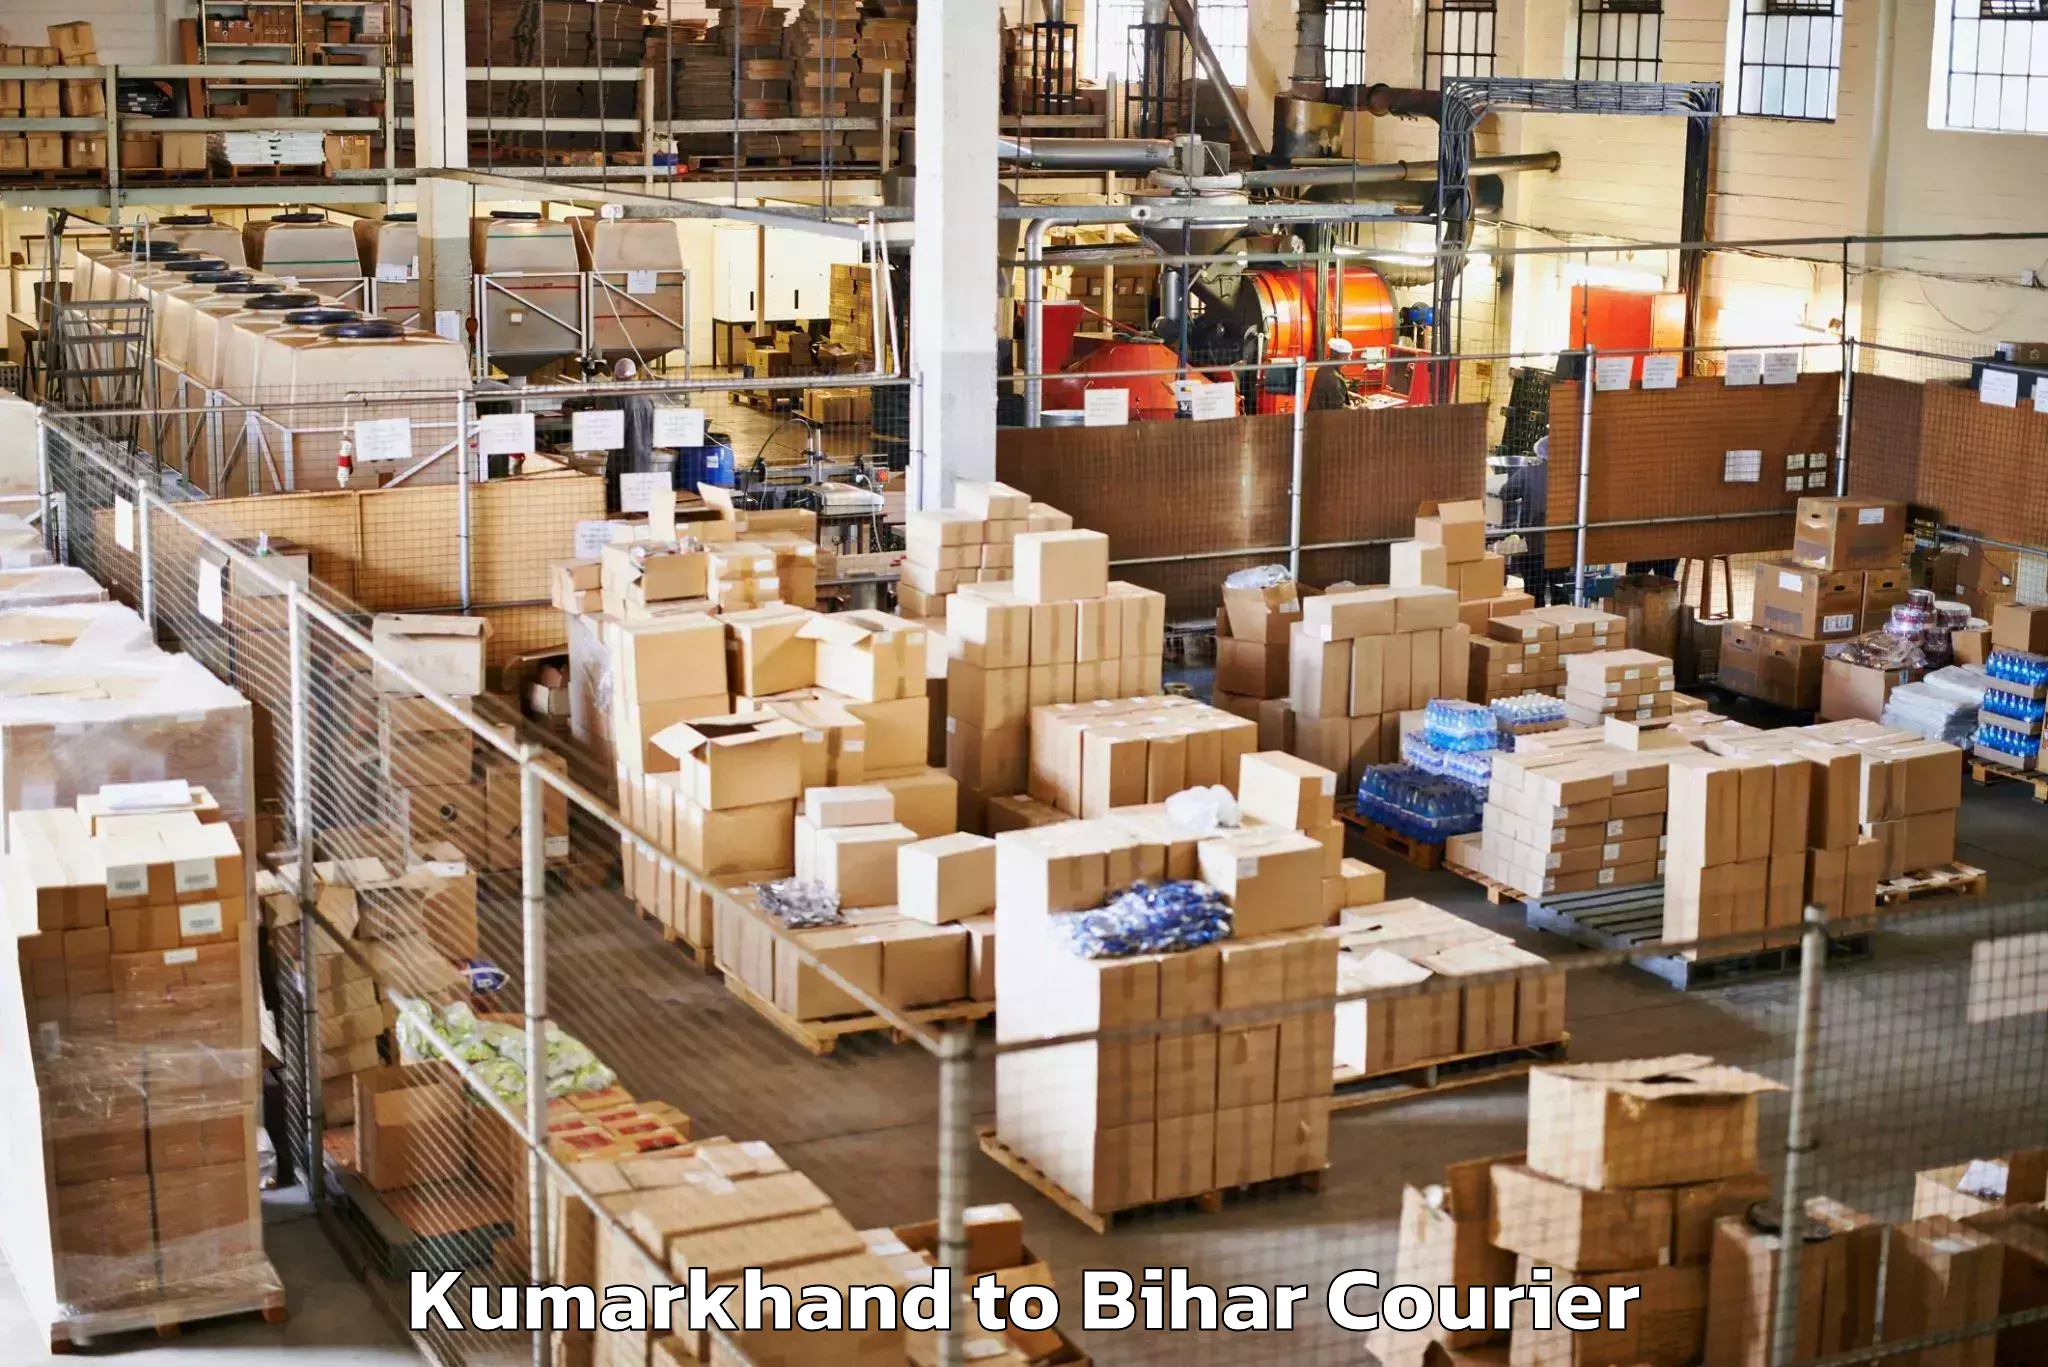 Luggage delivery system Kumarkhand to Goh Aurangabad